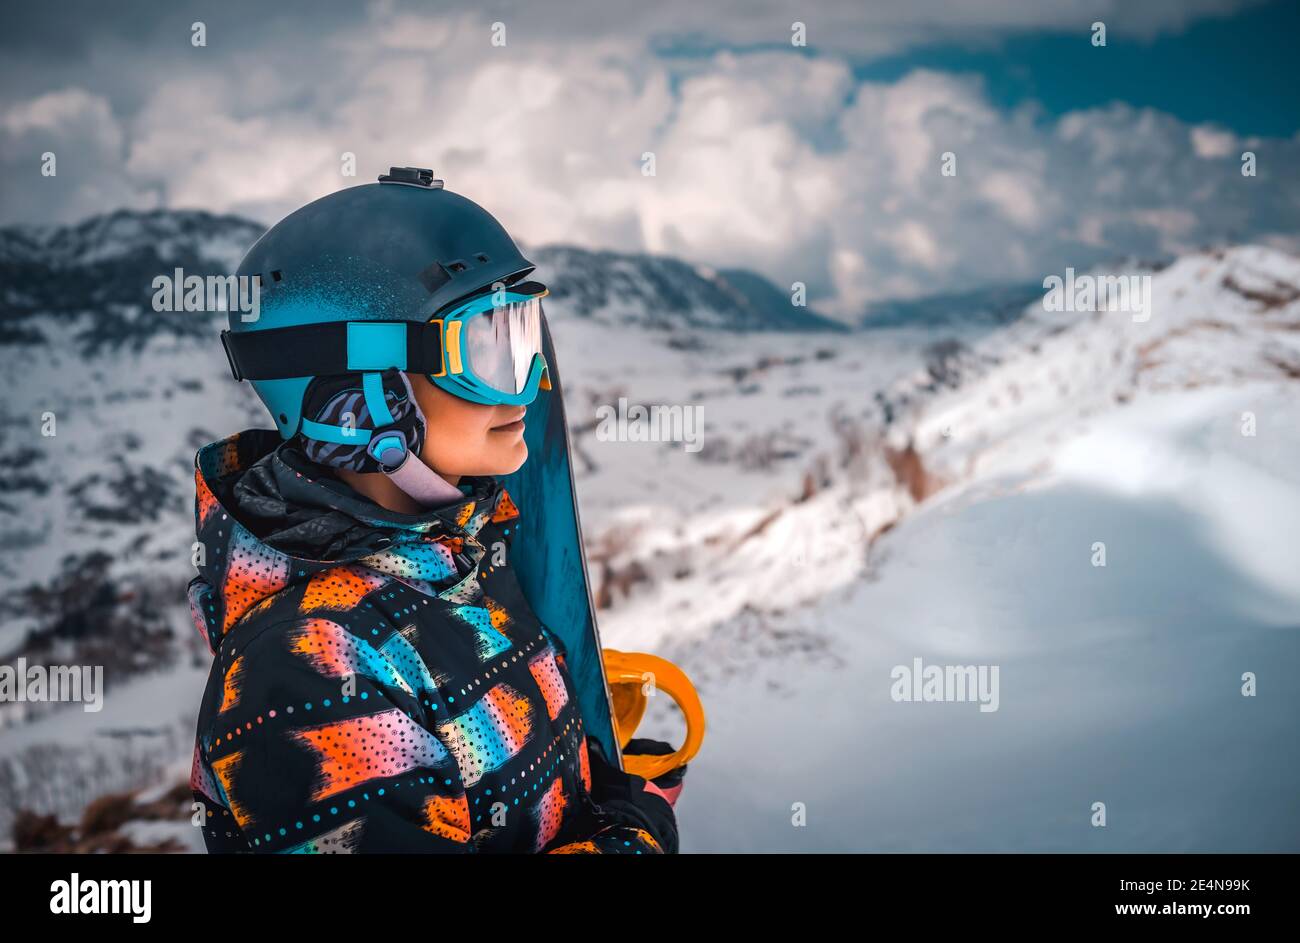 Profilo Ritratto di Snowboarder Girl guarda in lontananza in un bellissimo paesaggio invernale di montagna. Persone attive che apprezzano la stazione sciistica. Foto Stock